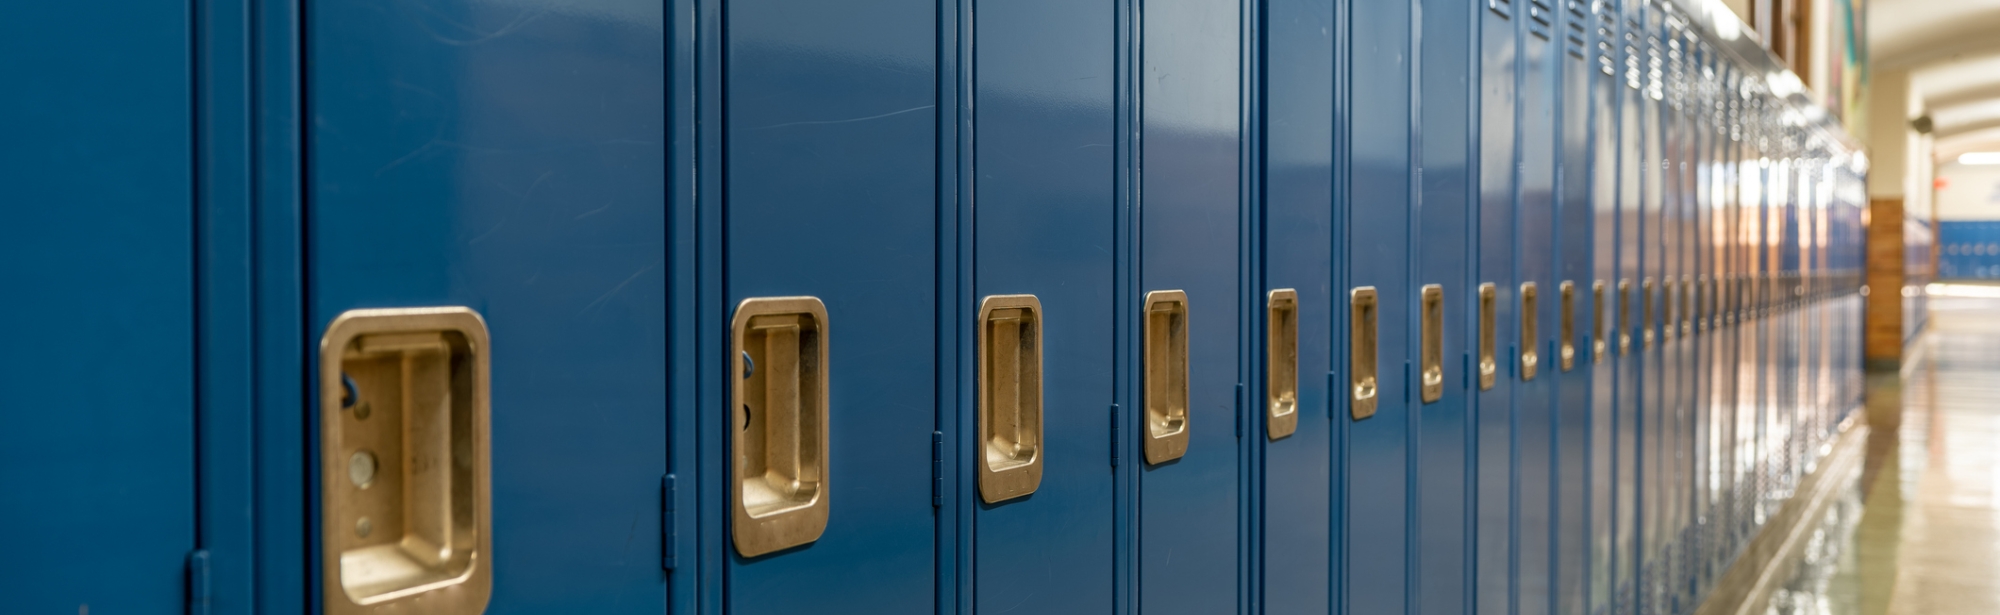 Row of blue lockers in a school